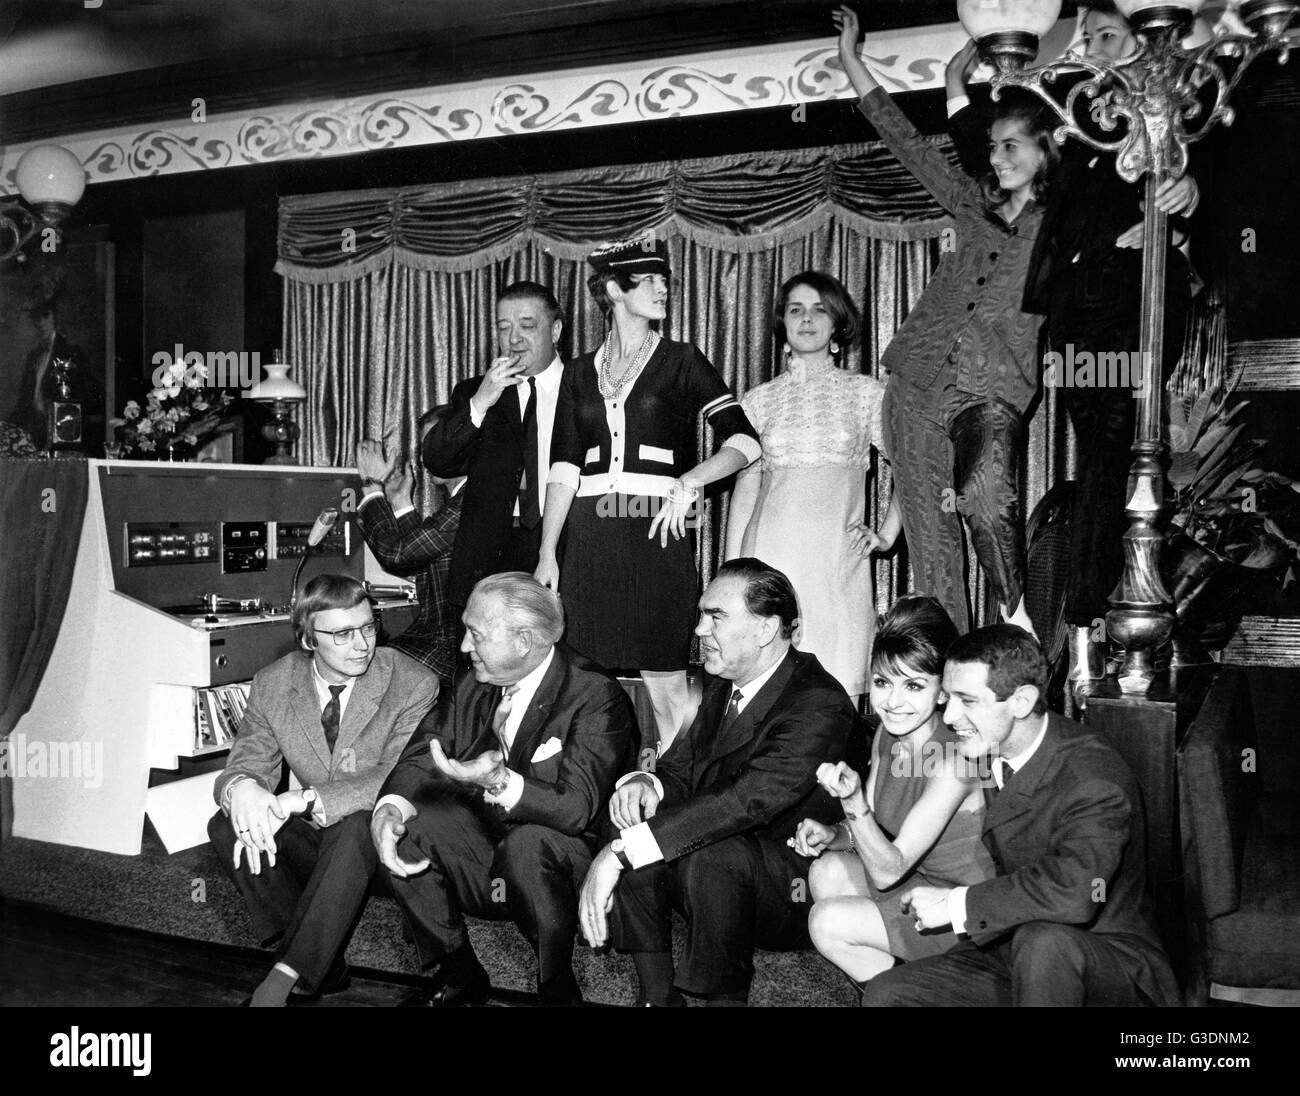 Unternehmer Hans Herbert Blatzheim (2. v. l., sitzend) neben seinem Freund Max Schmeling bei der Eröffnung des 'Crazy Club' IN NORIMBERGA, Deutschland 1960er Jahre. Foto Stock